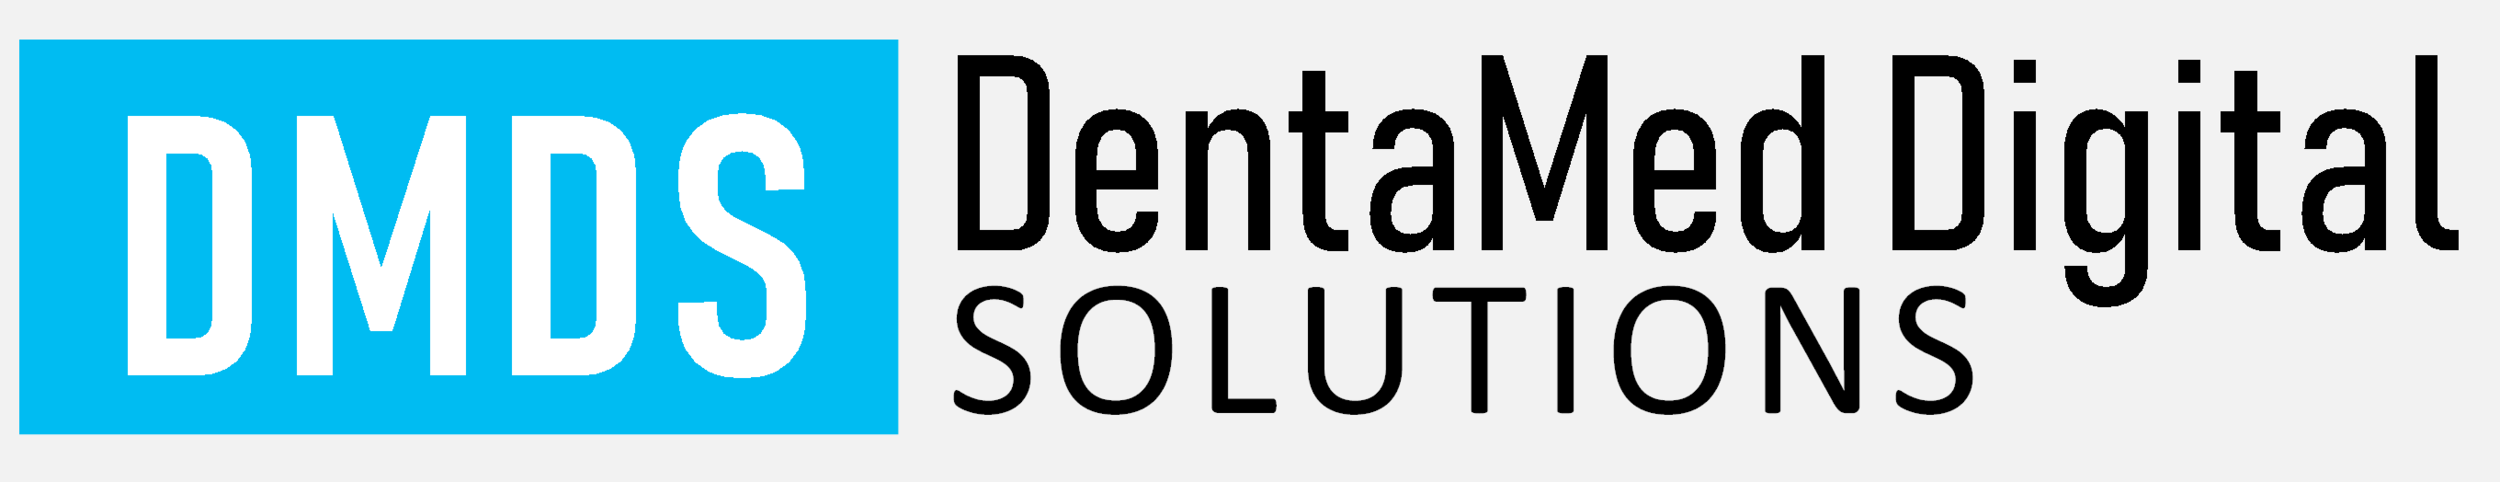 DentaMed Digital Solutions LLC